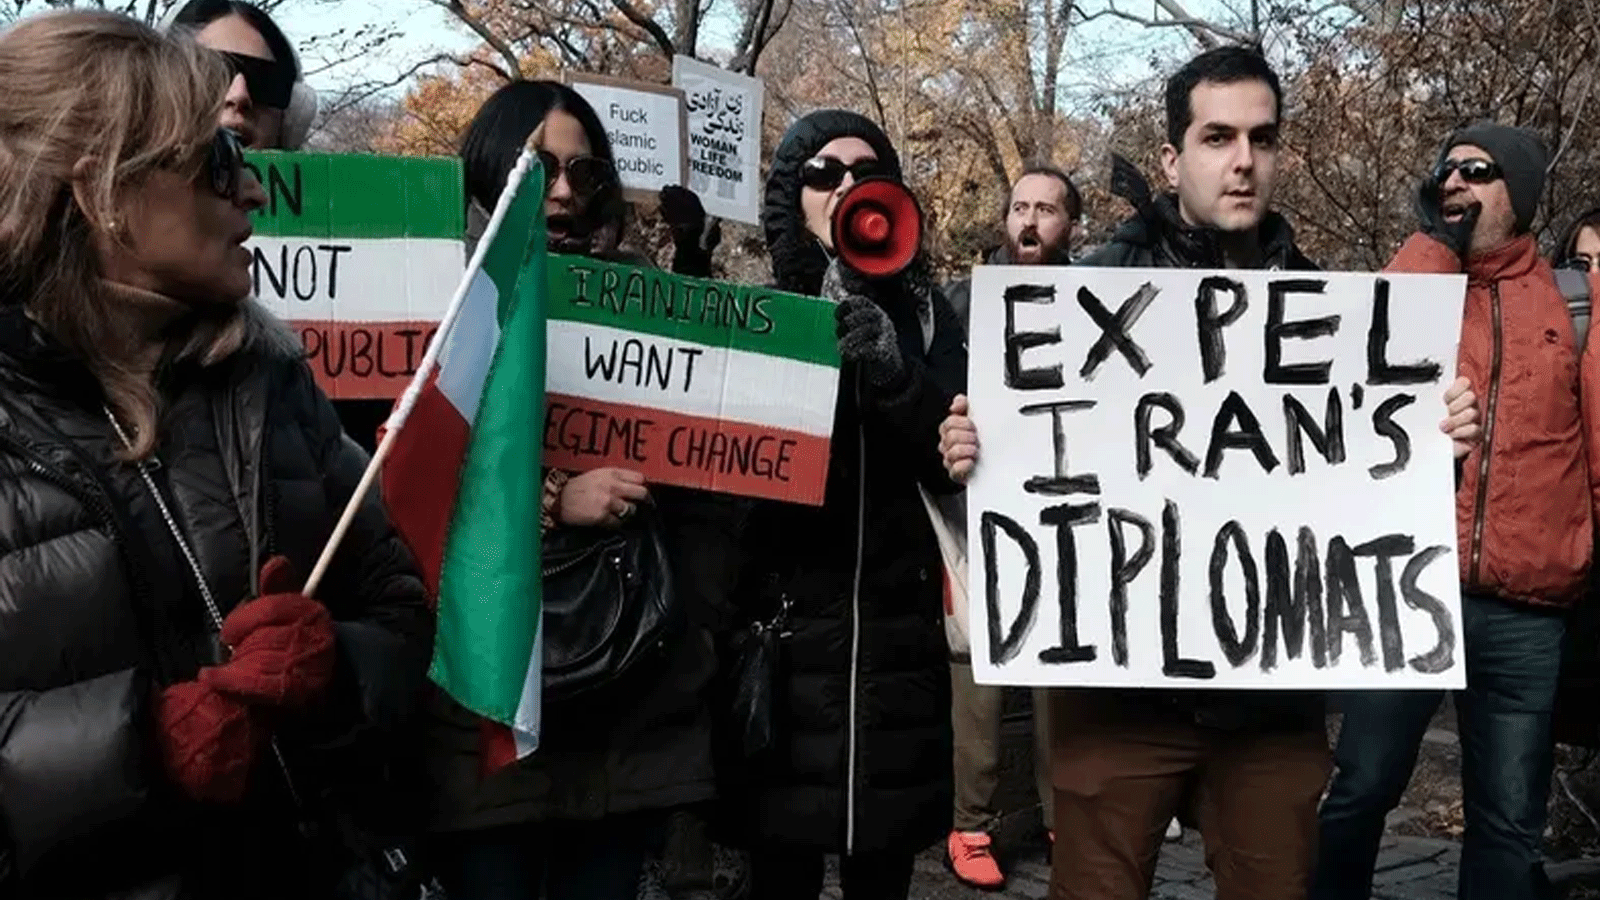 احتجاج مقر إقامة دبلوماسي إيراني للتنديد بالحكومة الإيرانية اعتراضاً على إعدام أحد المتظاهرين مؤخرًا في 10 كانون الأول\ديسمبر 2022 في مدينة نيويورك.